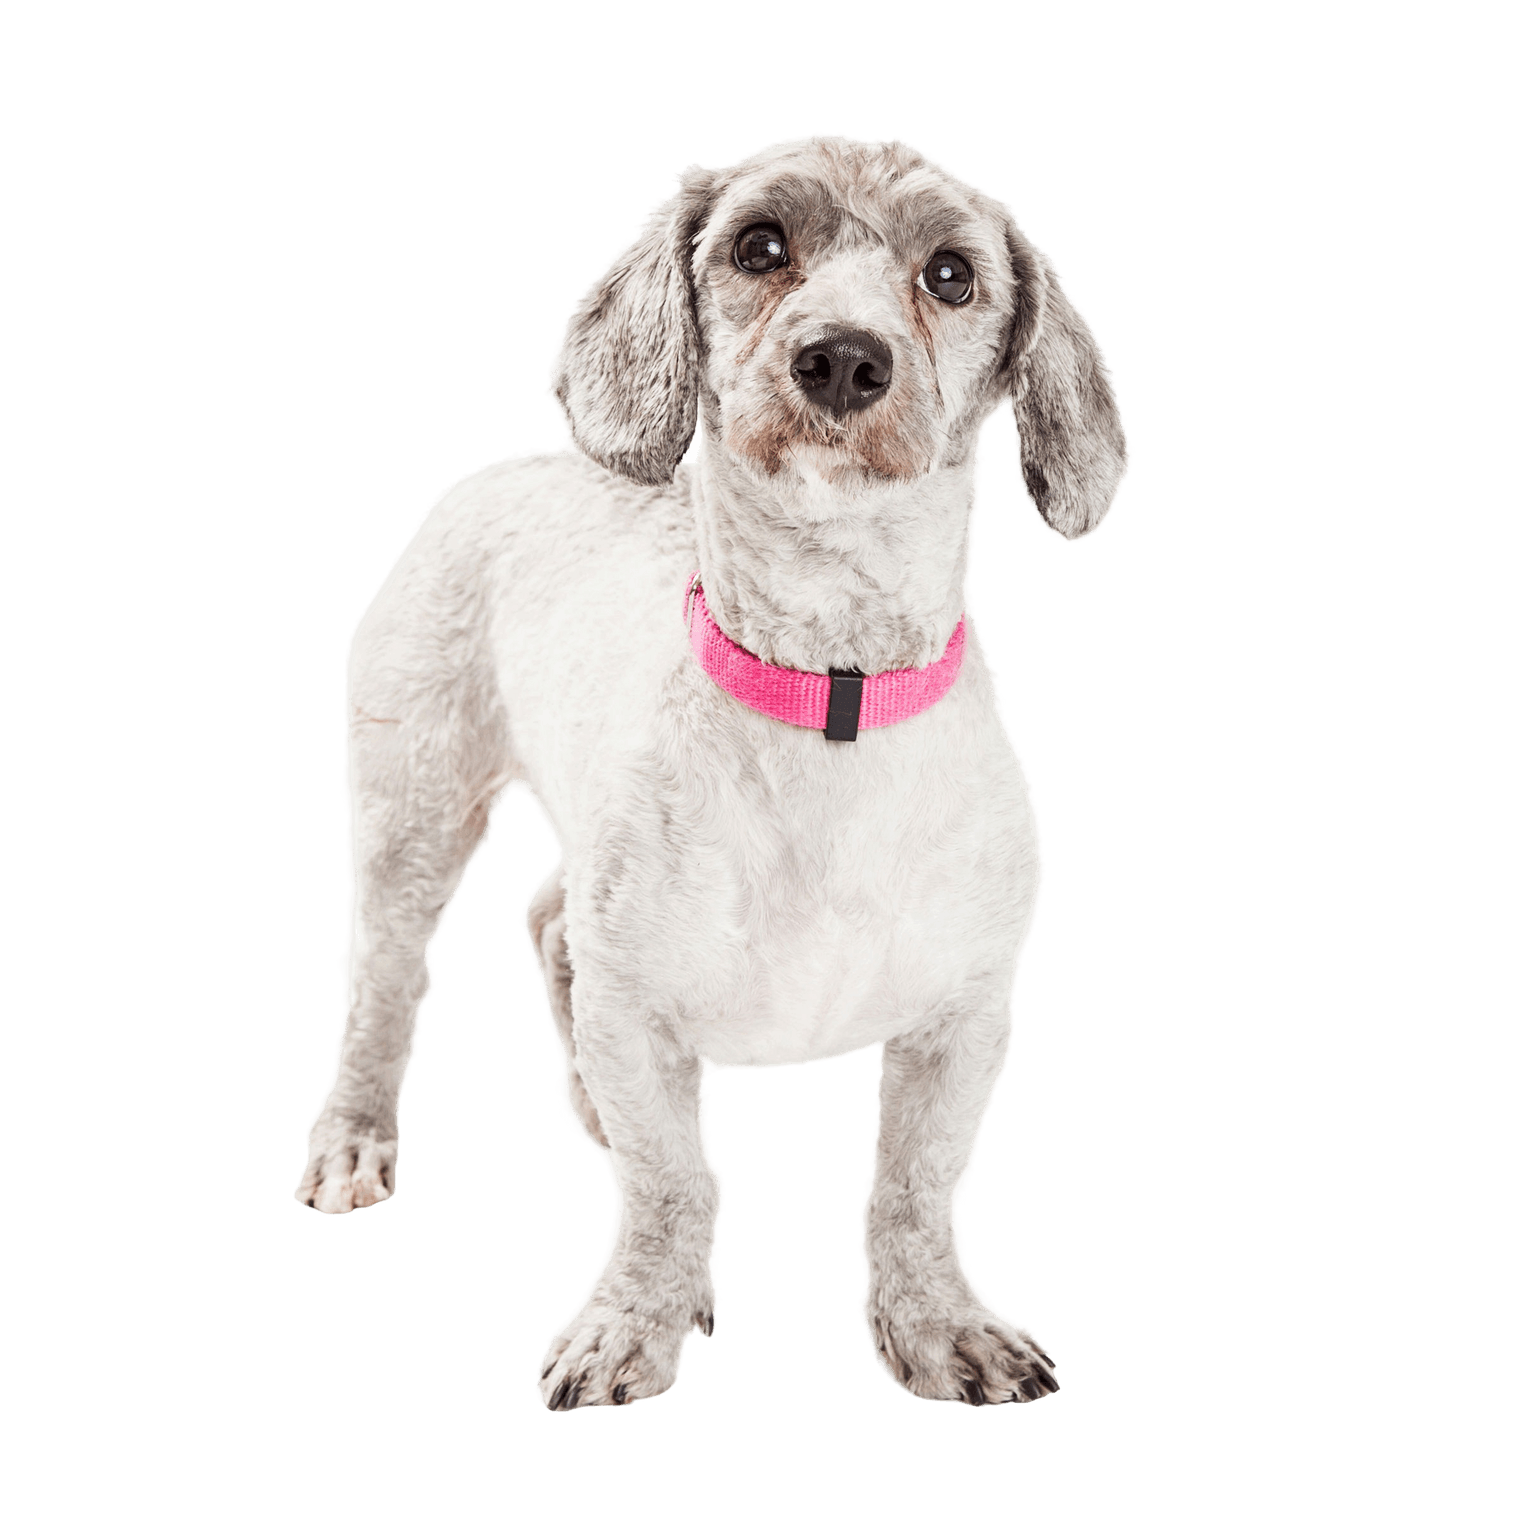 El perro Doxiepoo es un cruce entre un caniche y un perro salchicha o Dachshund